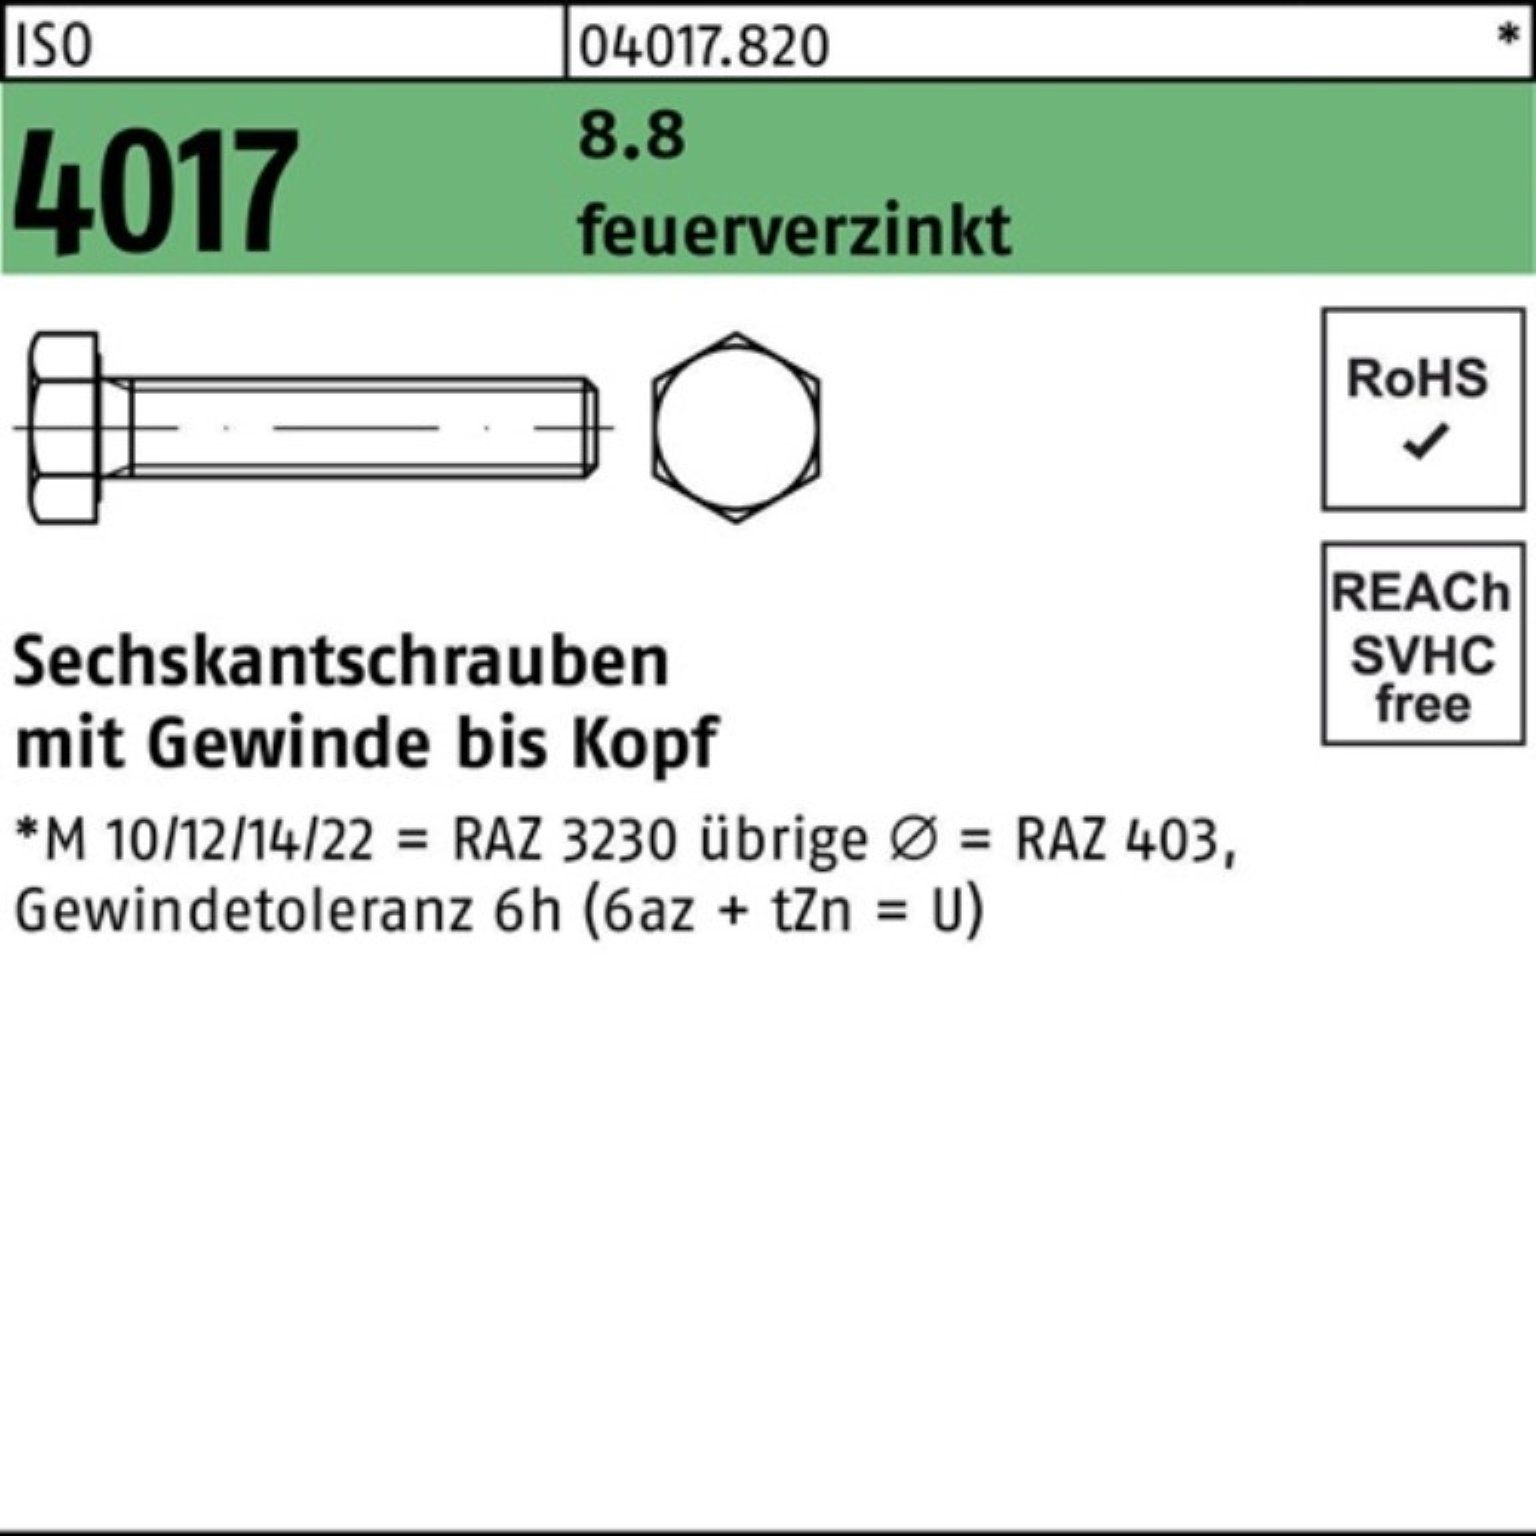 Bufab Sechskantschraube 100er Pack Sechskantschraube ISO 4017 VG M20x 100 8.8 feuerverz. 25 St